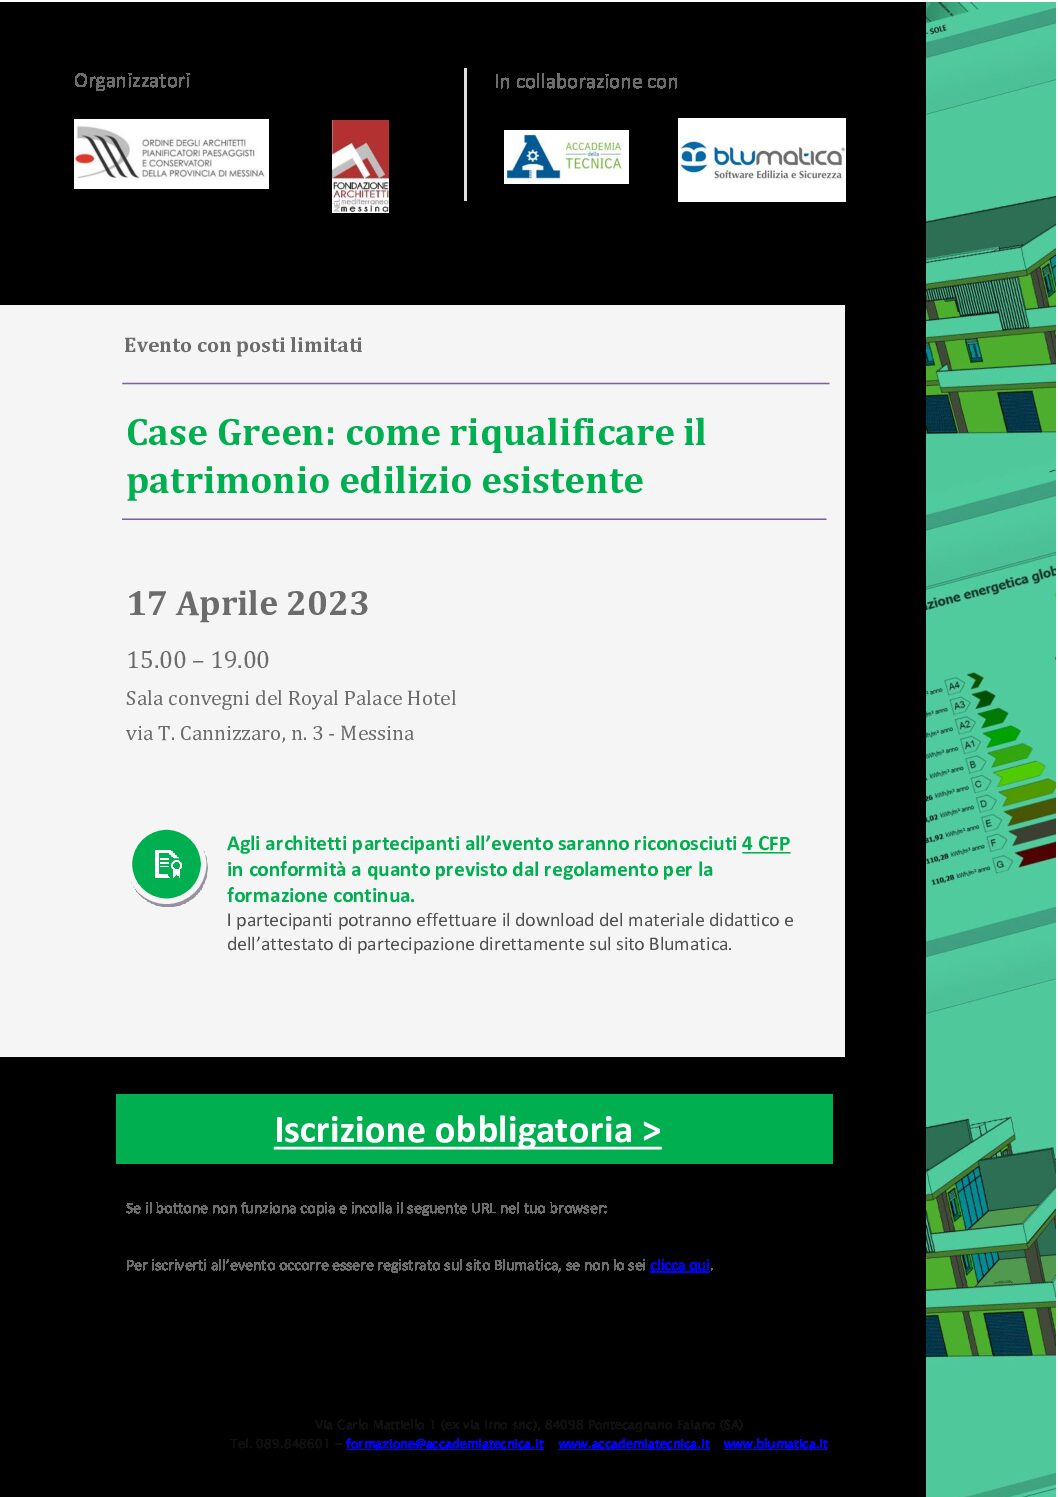 Il 17 aprile 2023 alle ore 15,00 al Royal Palace Hotel, il seminario tecnico in “Case Green: come riqualificare il patrimonio edilizio esistente”